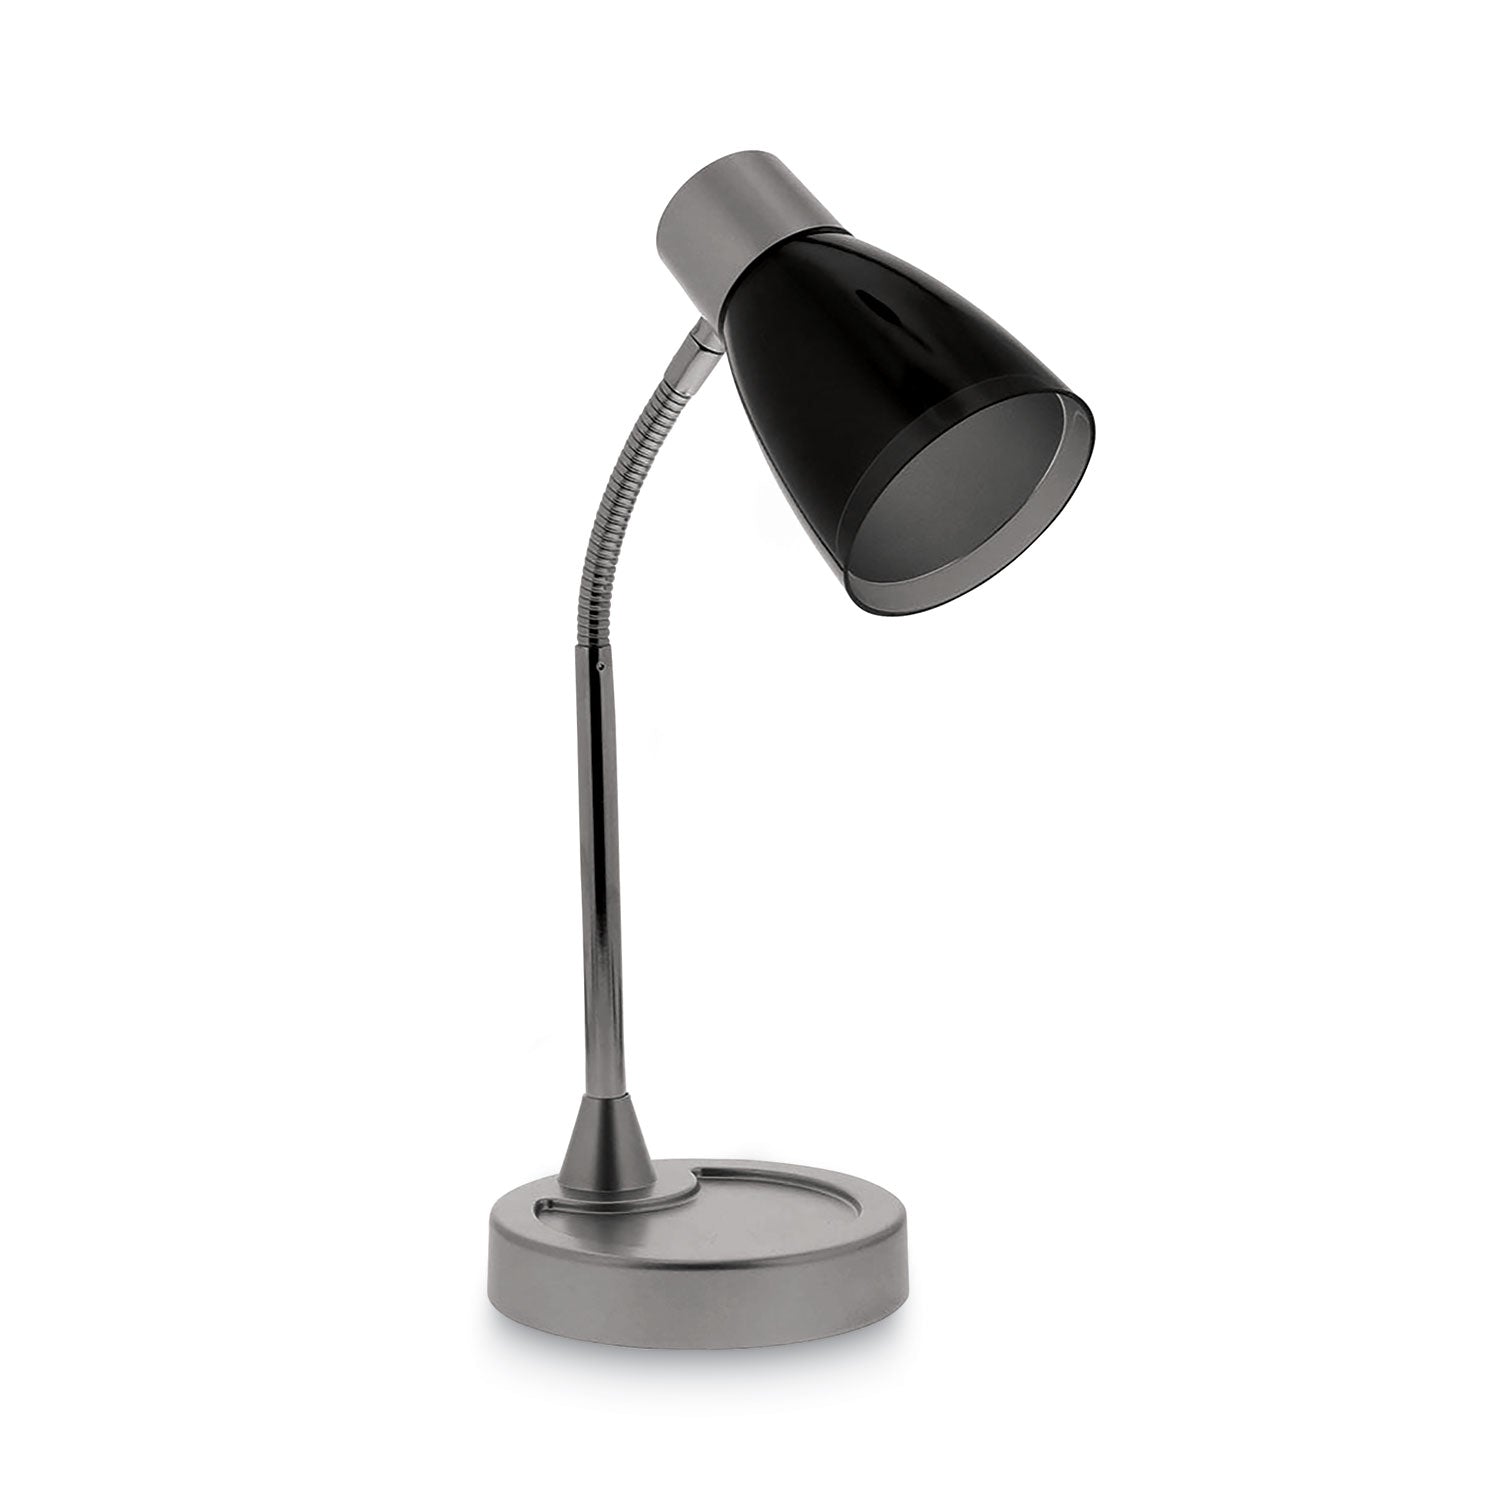 adjustable-led-desk-lamp-45-dia-base-20-tall-chrome-black_bosvled1510 - 1